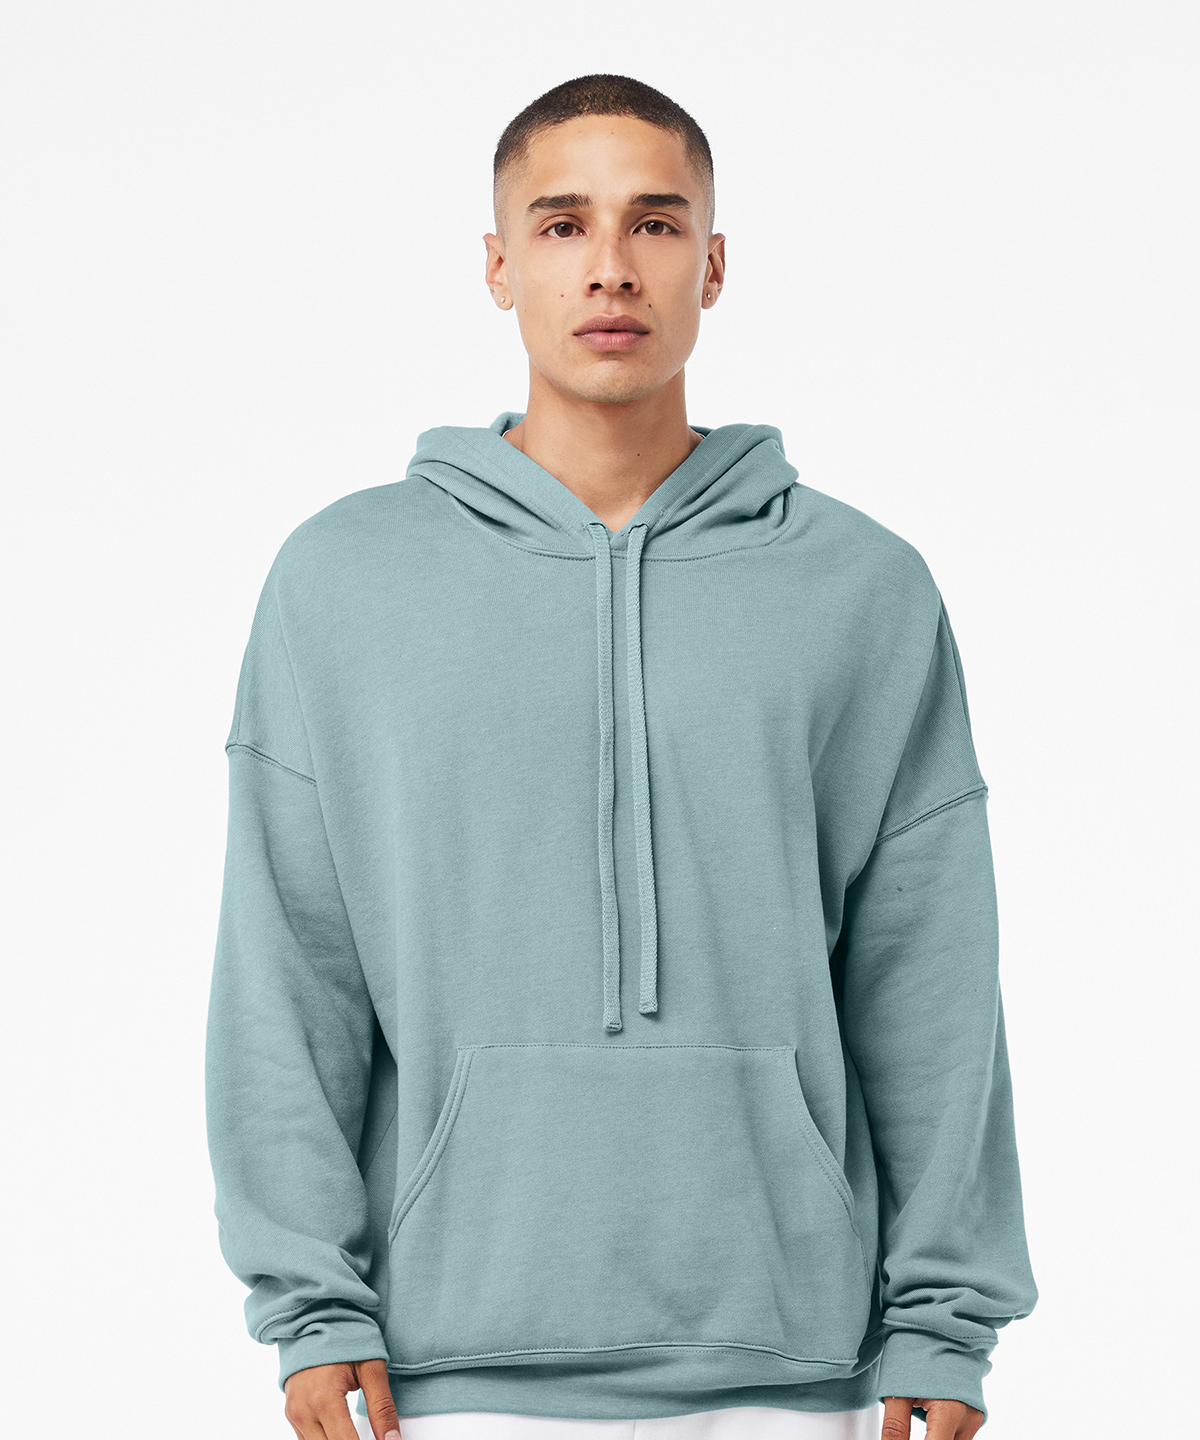 Unisex sponge fleece pullover DTM hoodie